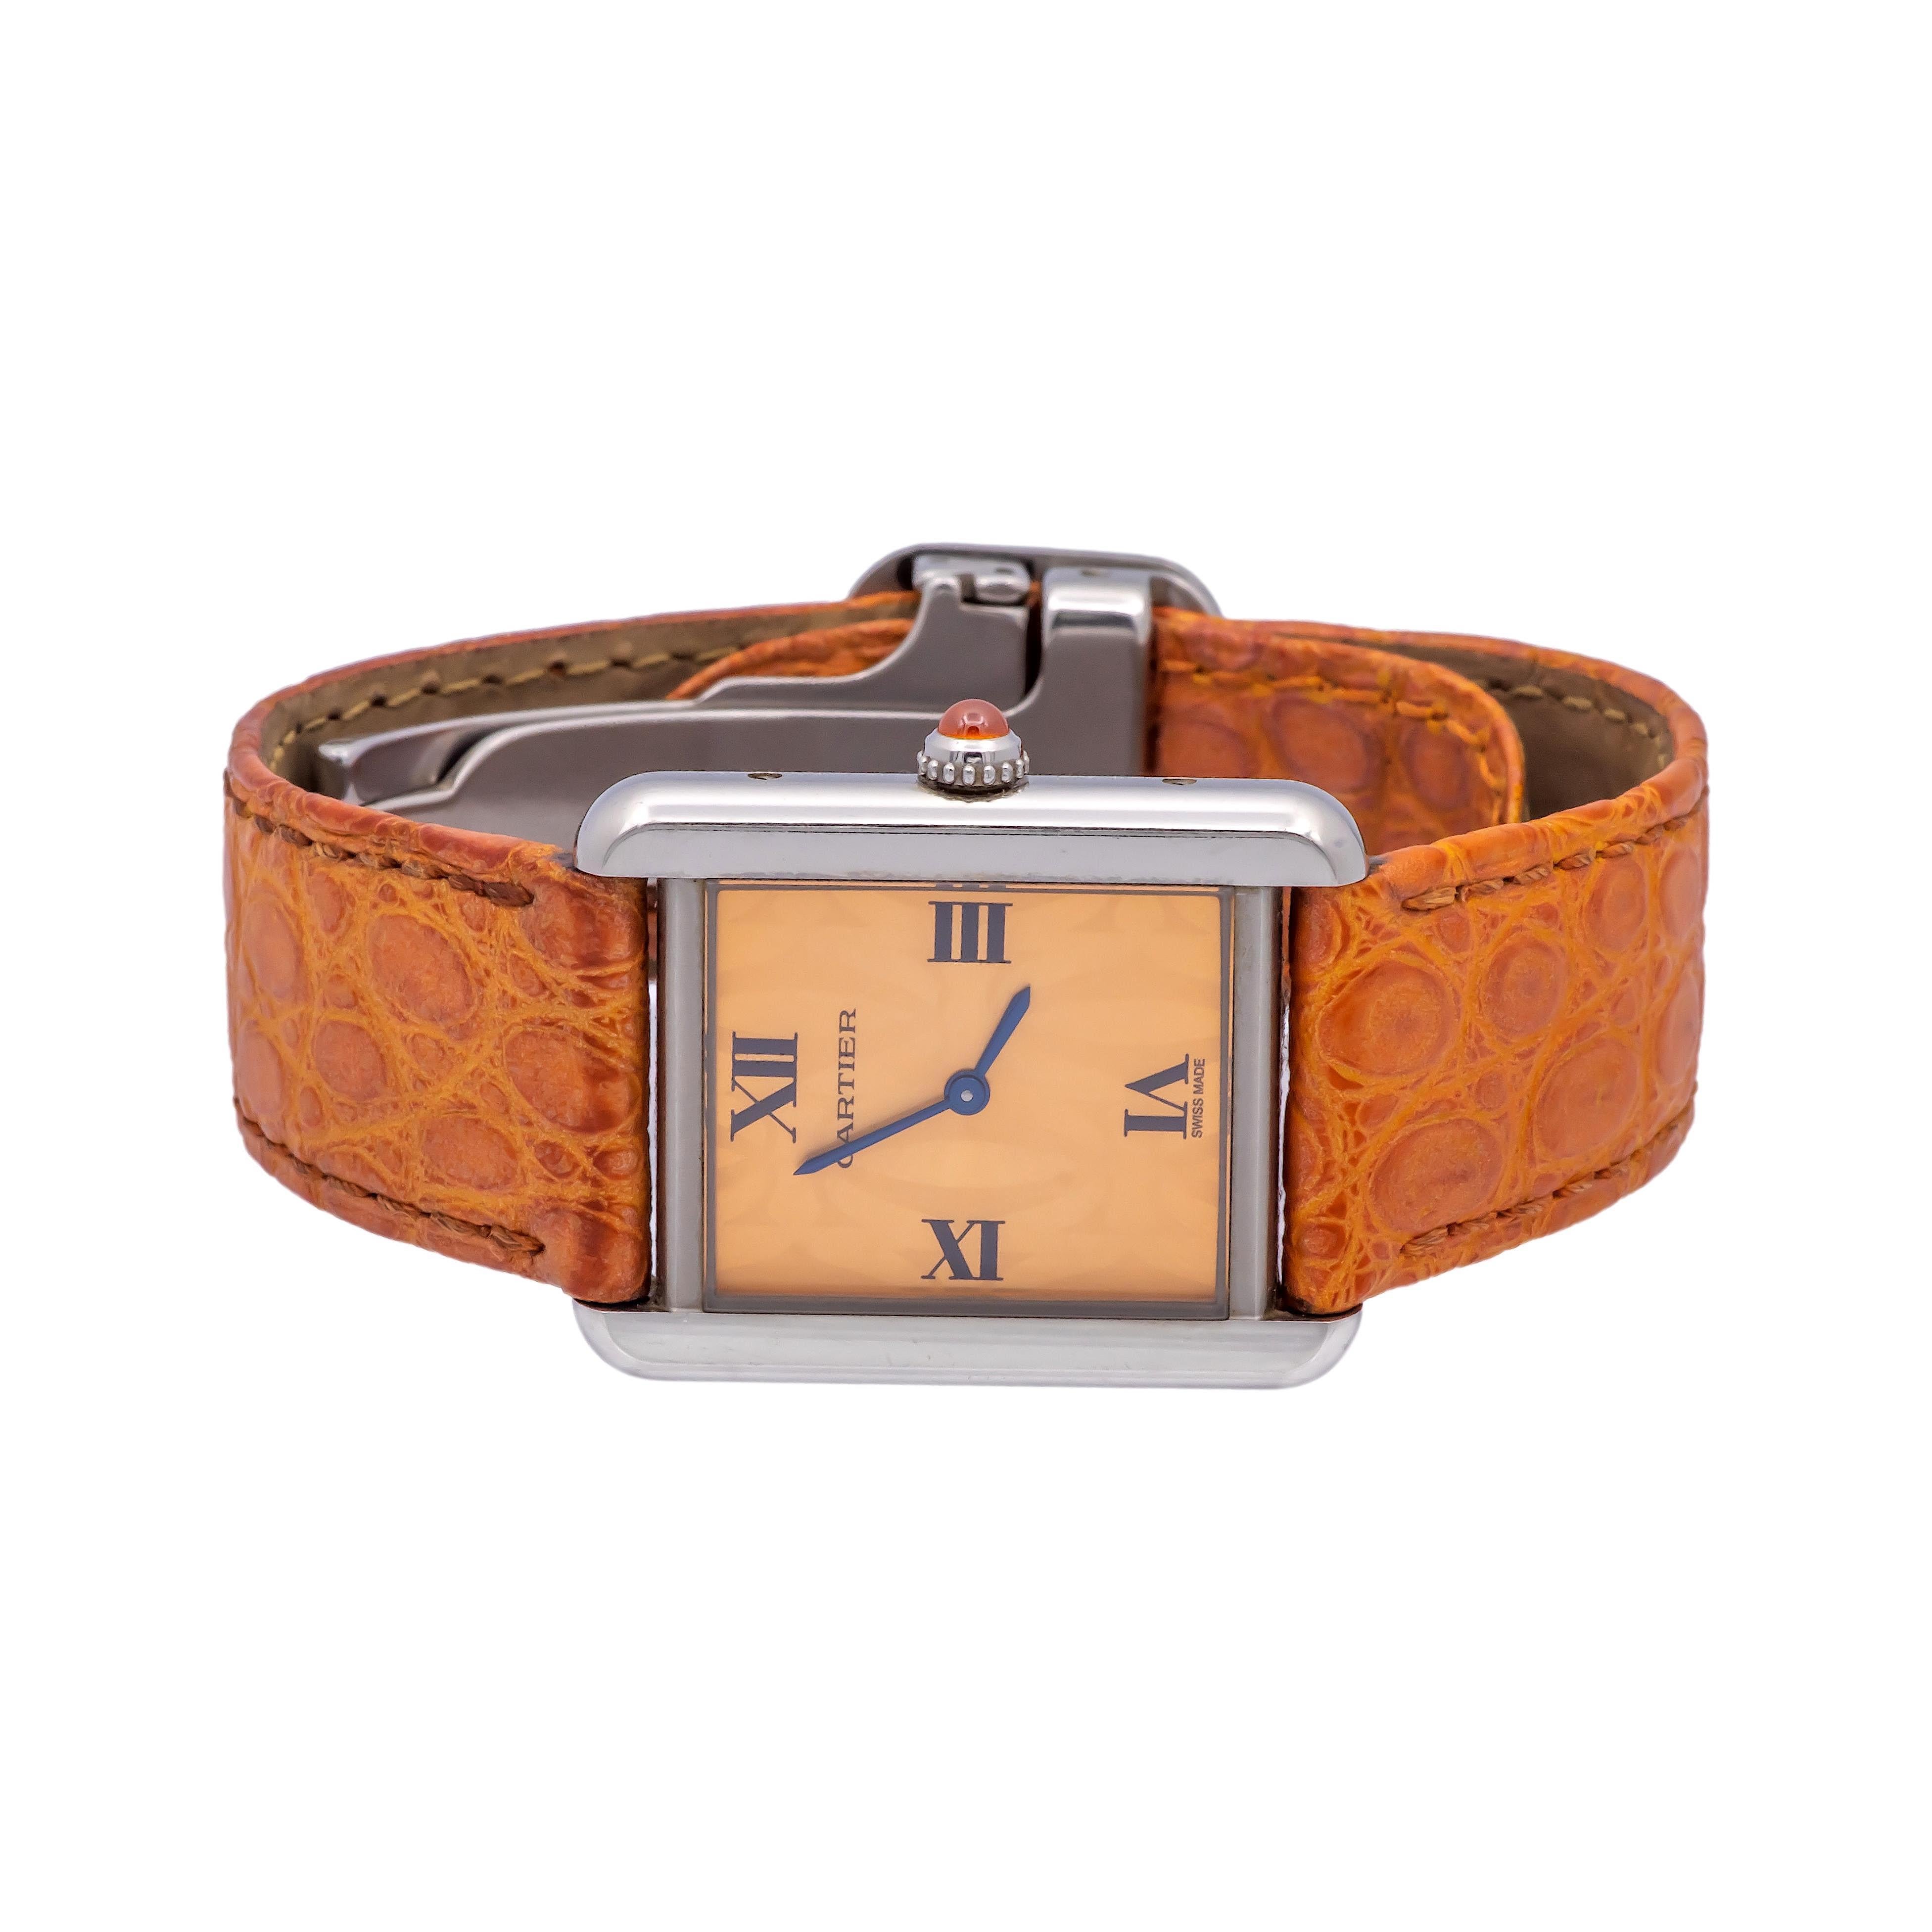 Gebrauchte Cartier-Uhr in limitierter Auflage aus der Tank Solo-Kollektion mit der Modellnummer 2716. Sie verfügt über einen Edelstahlrahmen, ein orangefarbenes Logo-Zifferblatt, römische Ziffern und ein passendes orangefarbenes